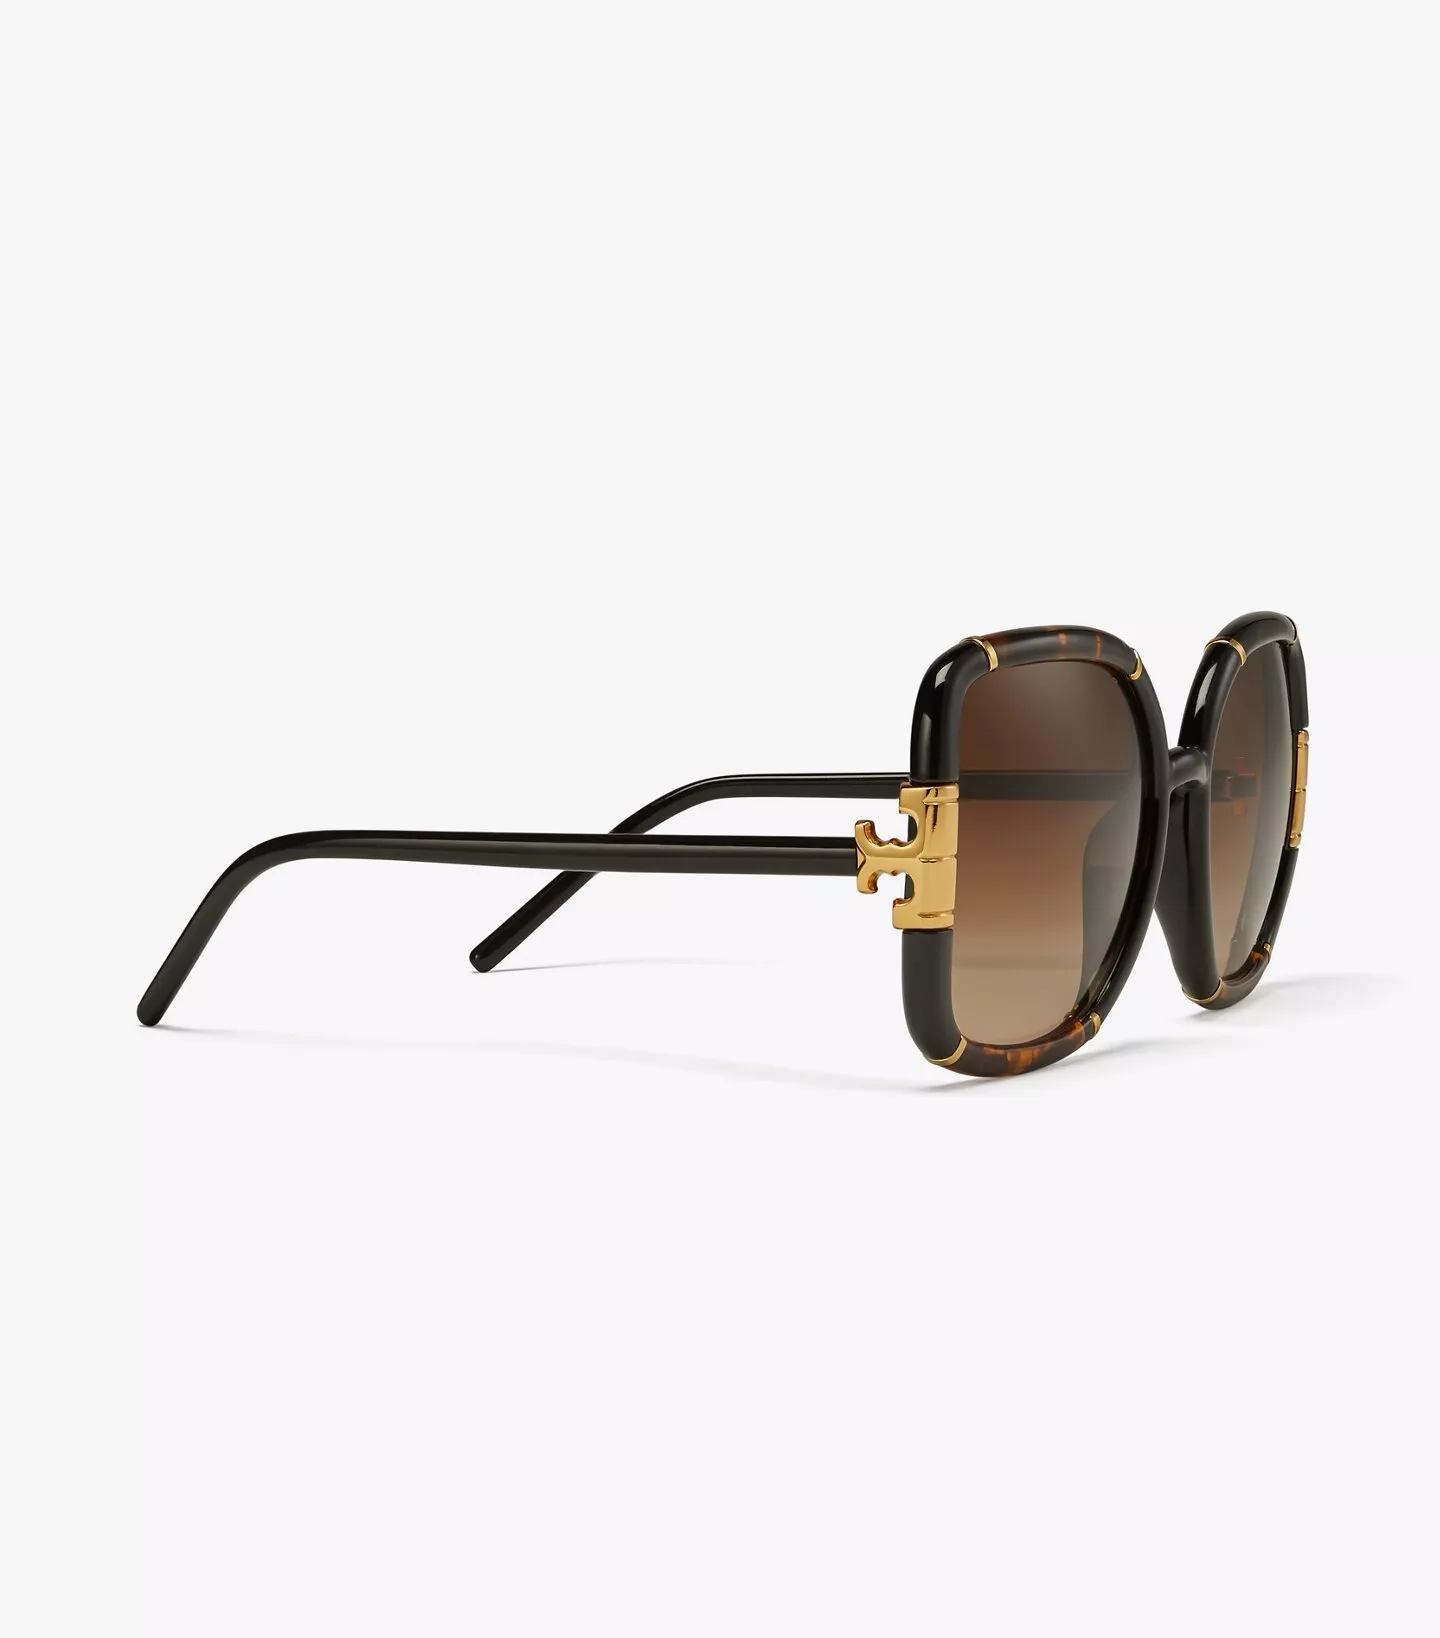 Kira Rectangular Sunglasses: Women's Designer Sunglasses & Eyewear